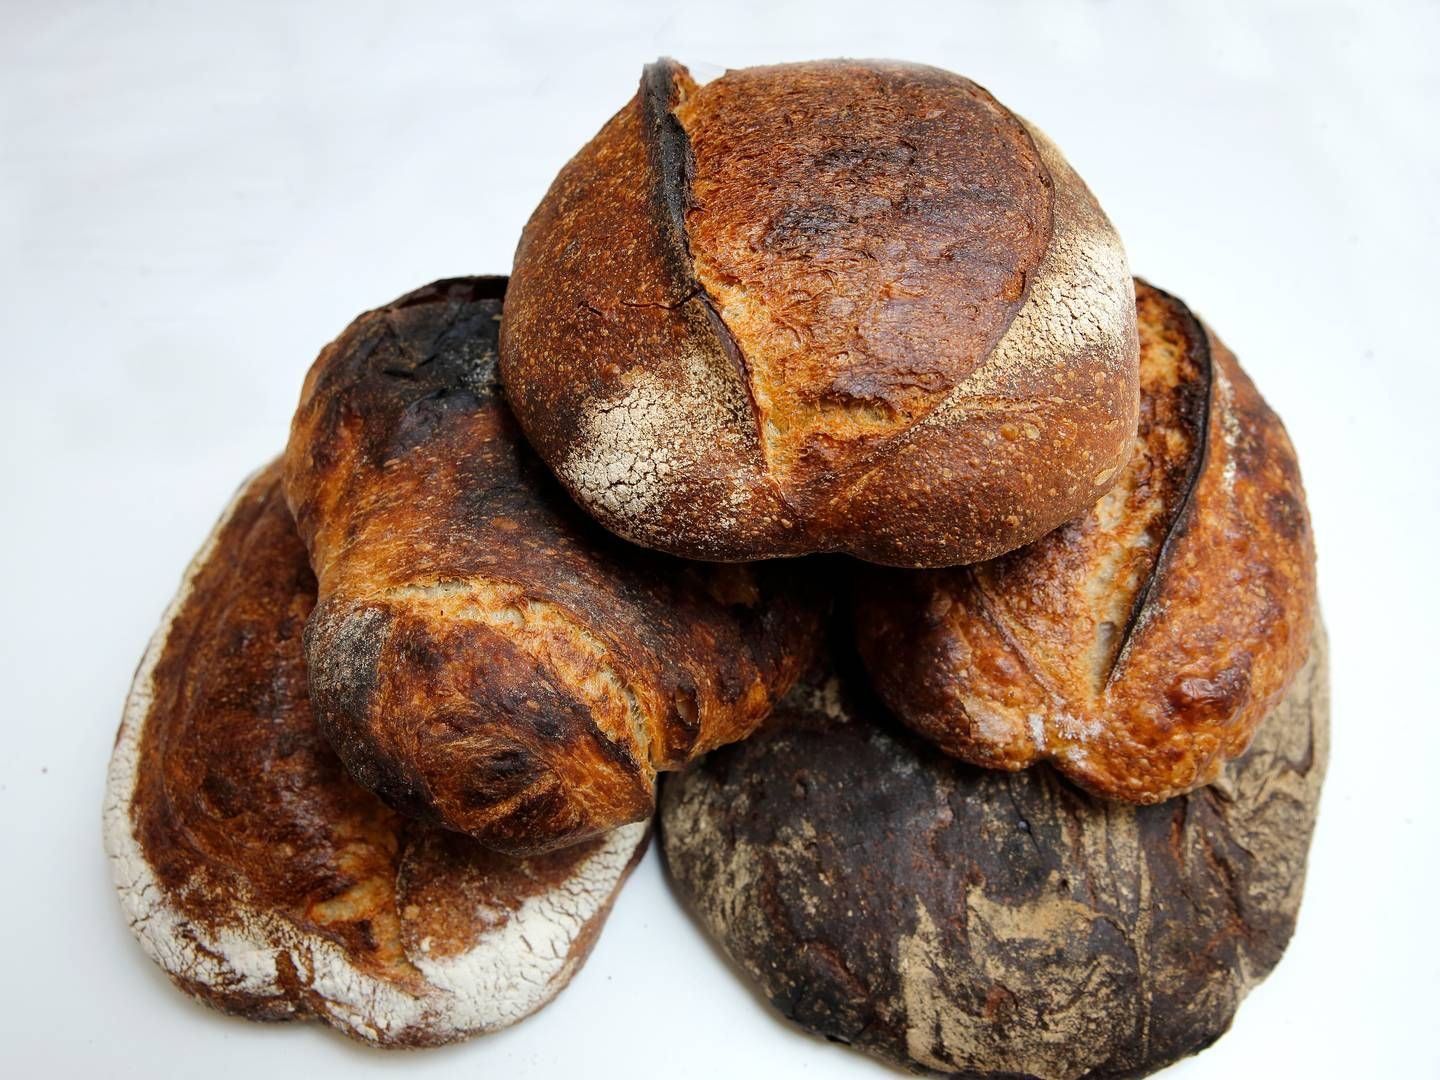 Credin, der er ejet af Orkla, producerer blandt andet bageringredienser til brød og kager. | Foto: Jens Dresling/Ritzau Scanpix.